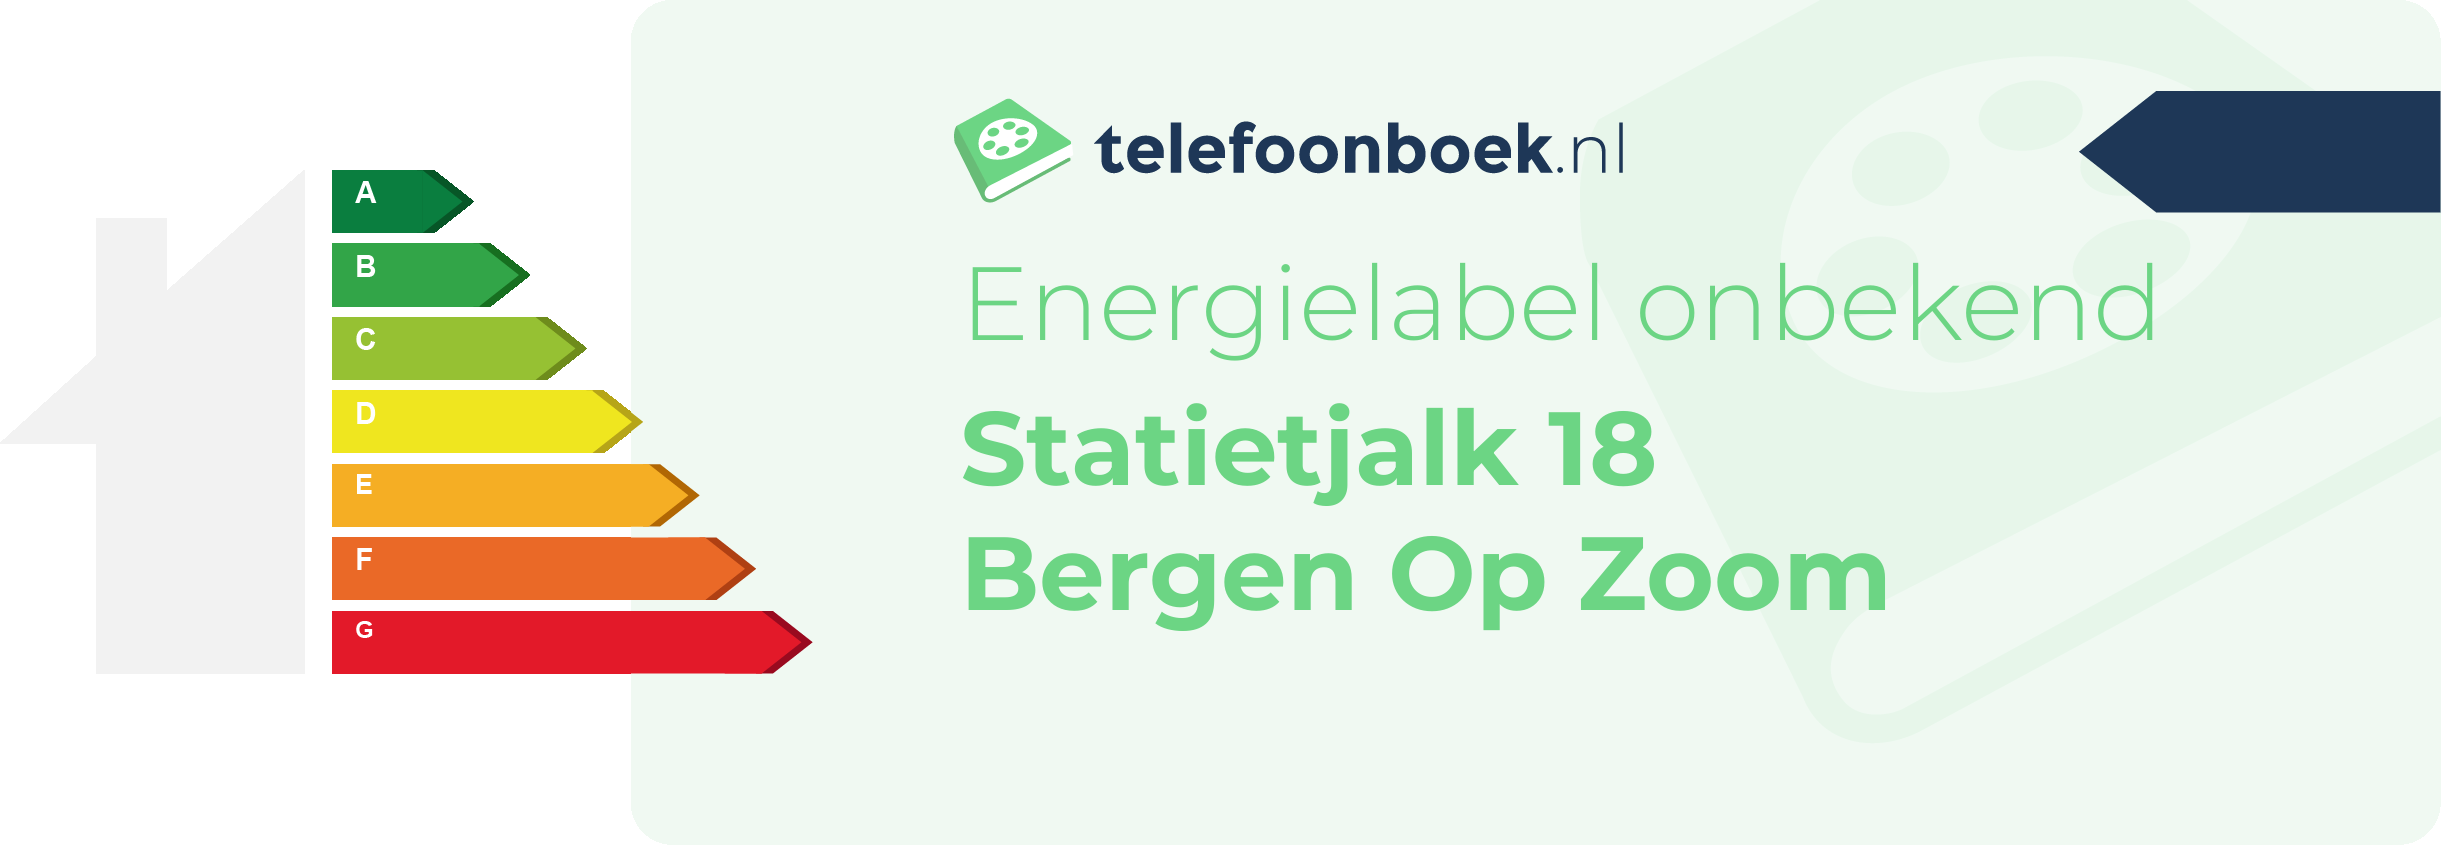 Energielabel Statietjalk 18 Bergen Op Zoom